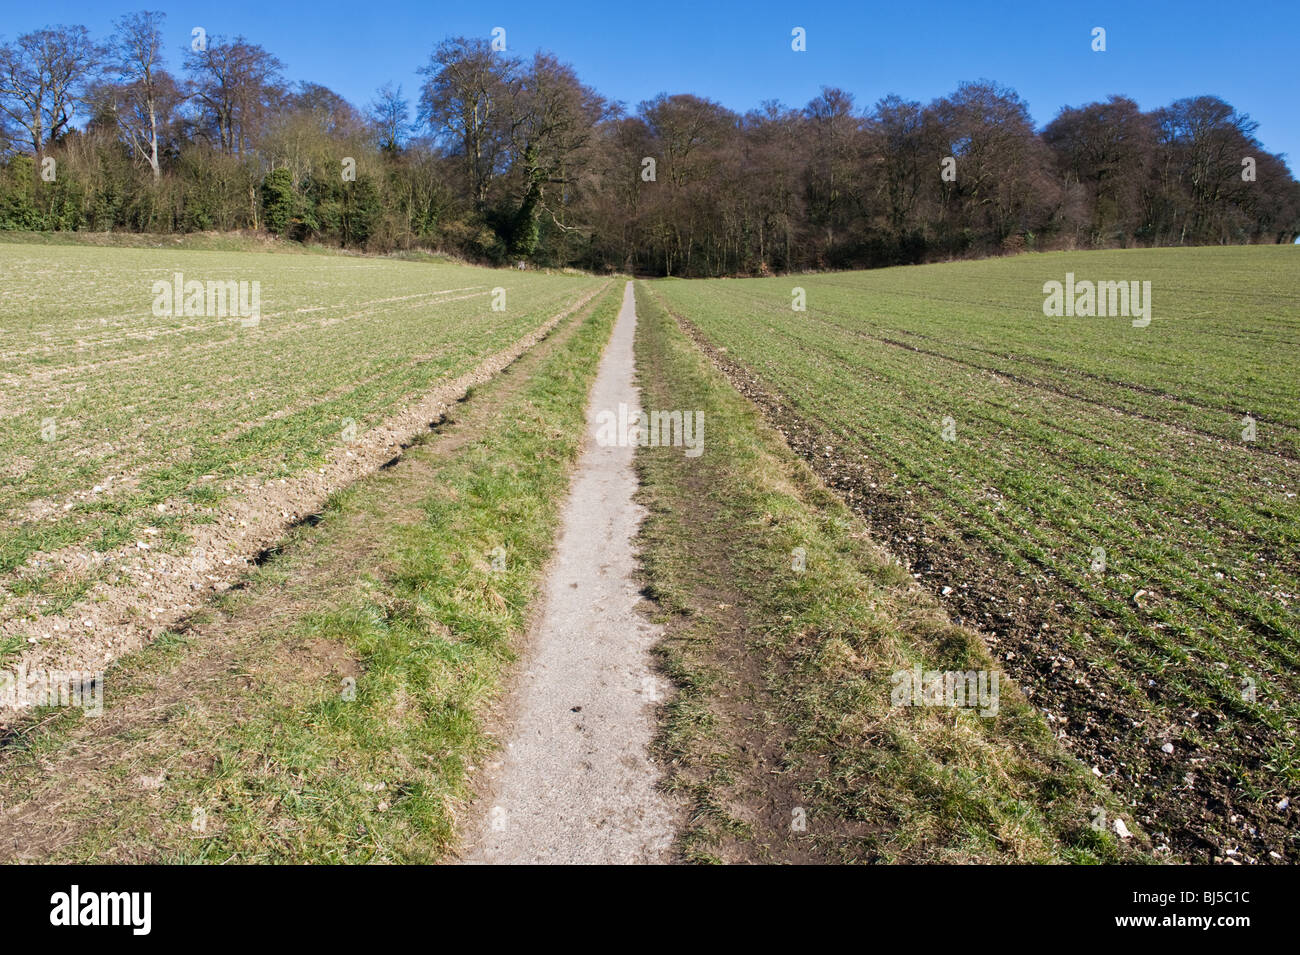 Droit de passage public, un sentier public rural à travers un champ à Amersham Buckinghamshire UK Banque D'Images